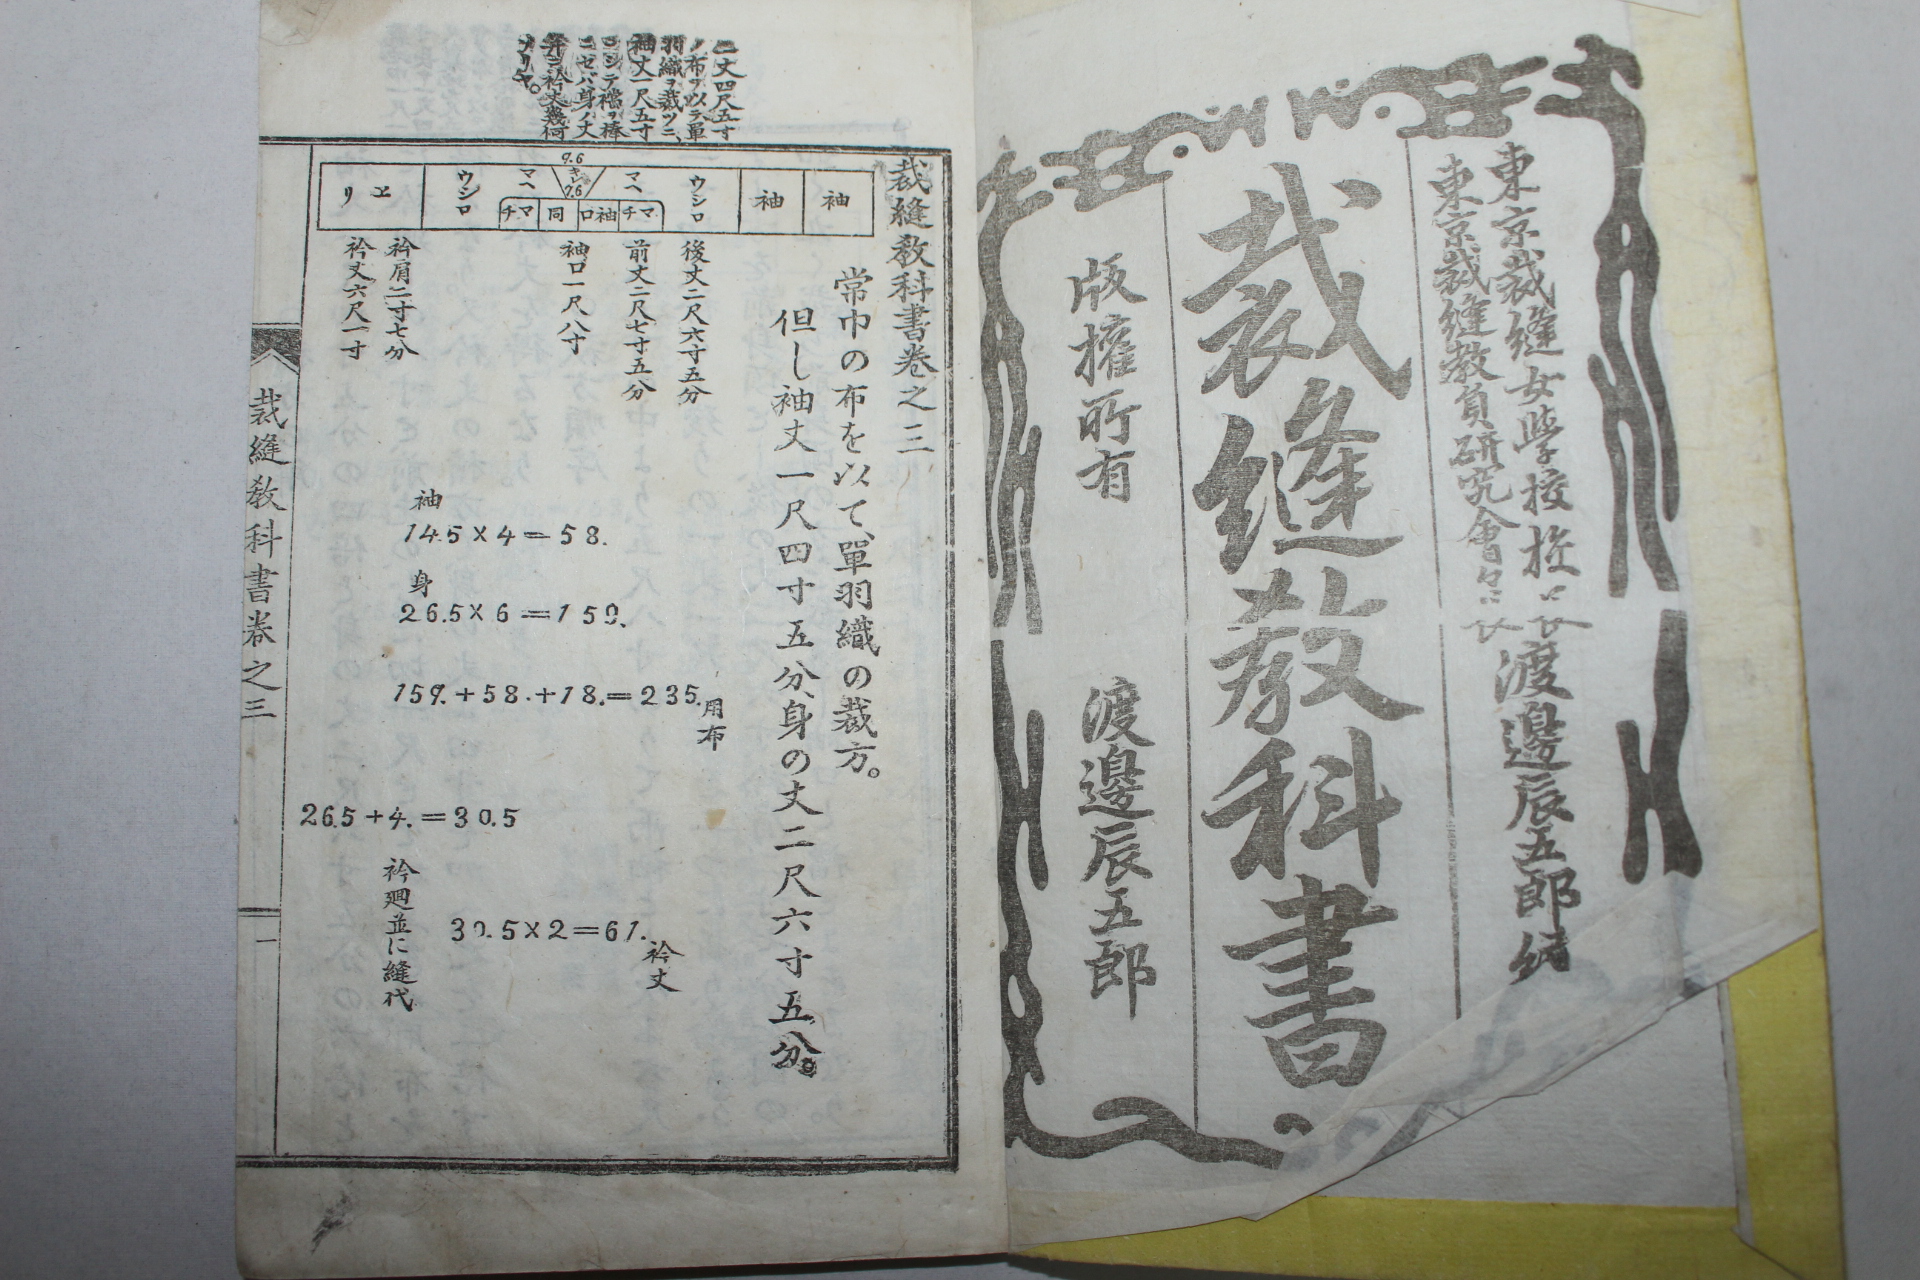 1897년(明治30年) 일본간행 재봉교과서(裁縫敎科書)권1,3   2책